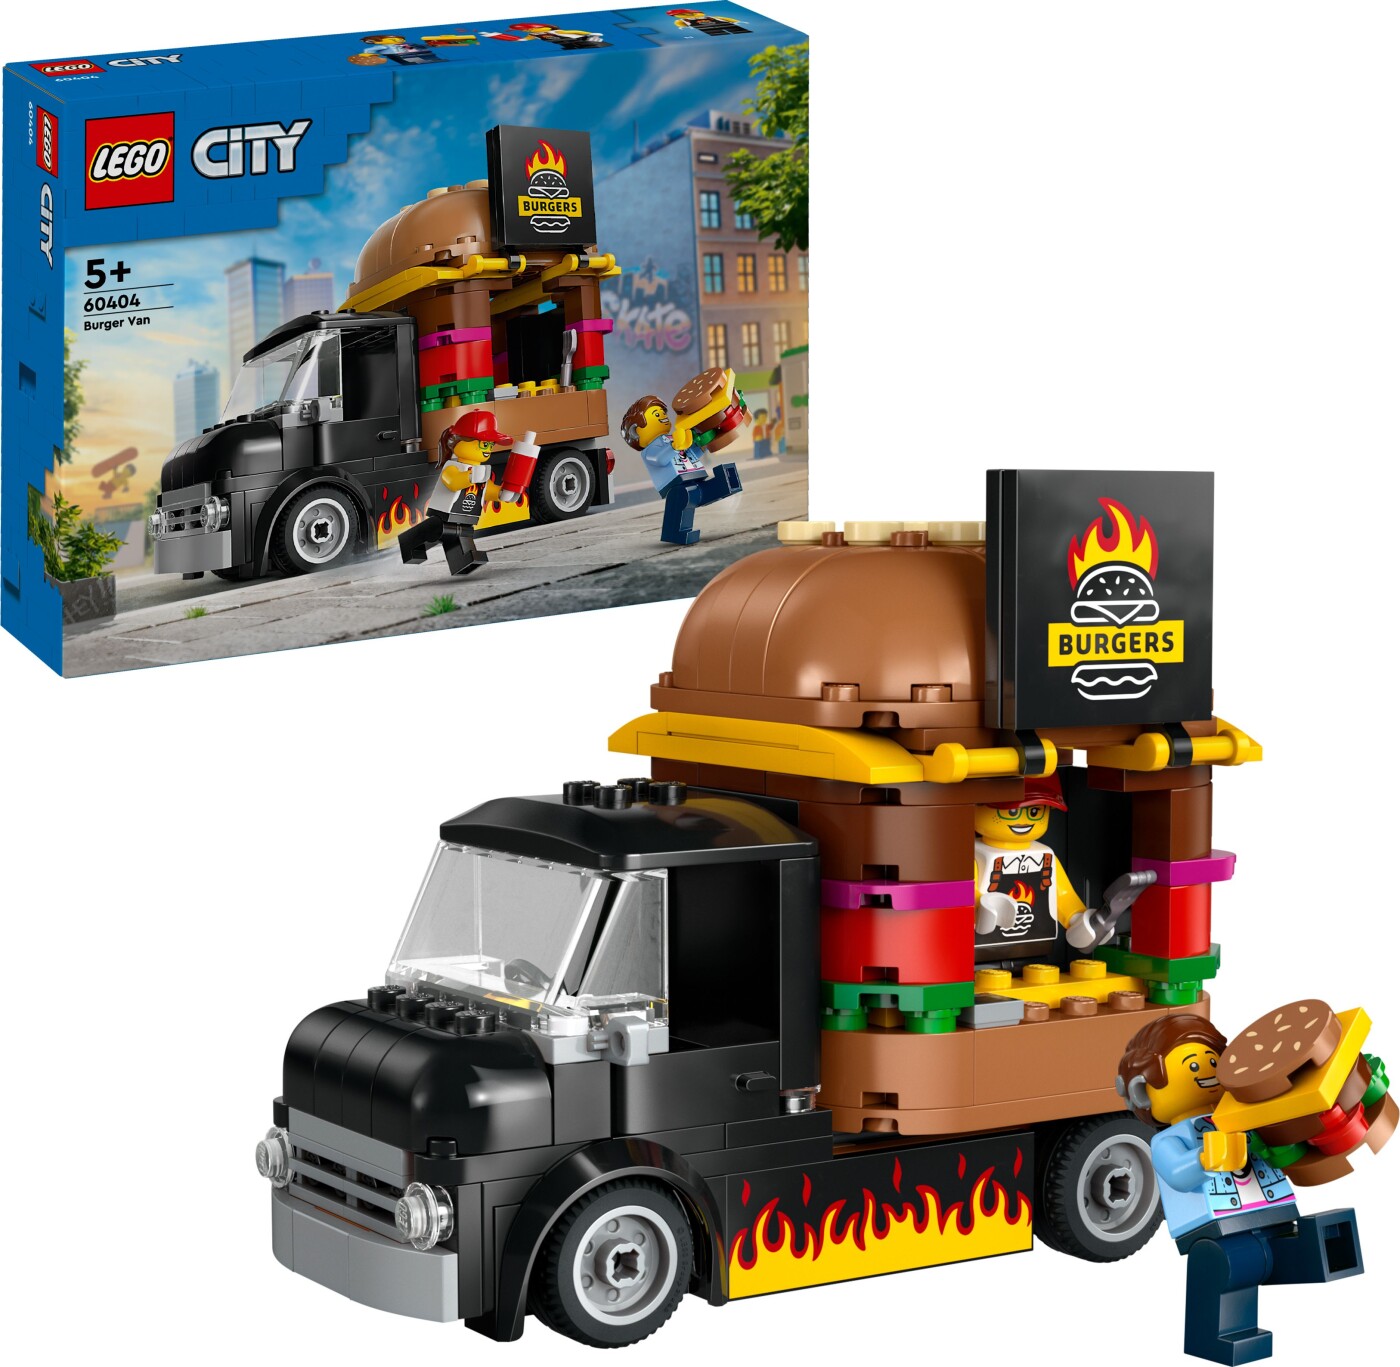 Billede af Lego City - Burgervogn - 60404 hos Gucca.dk